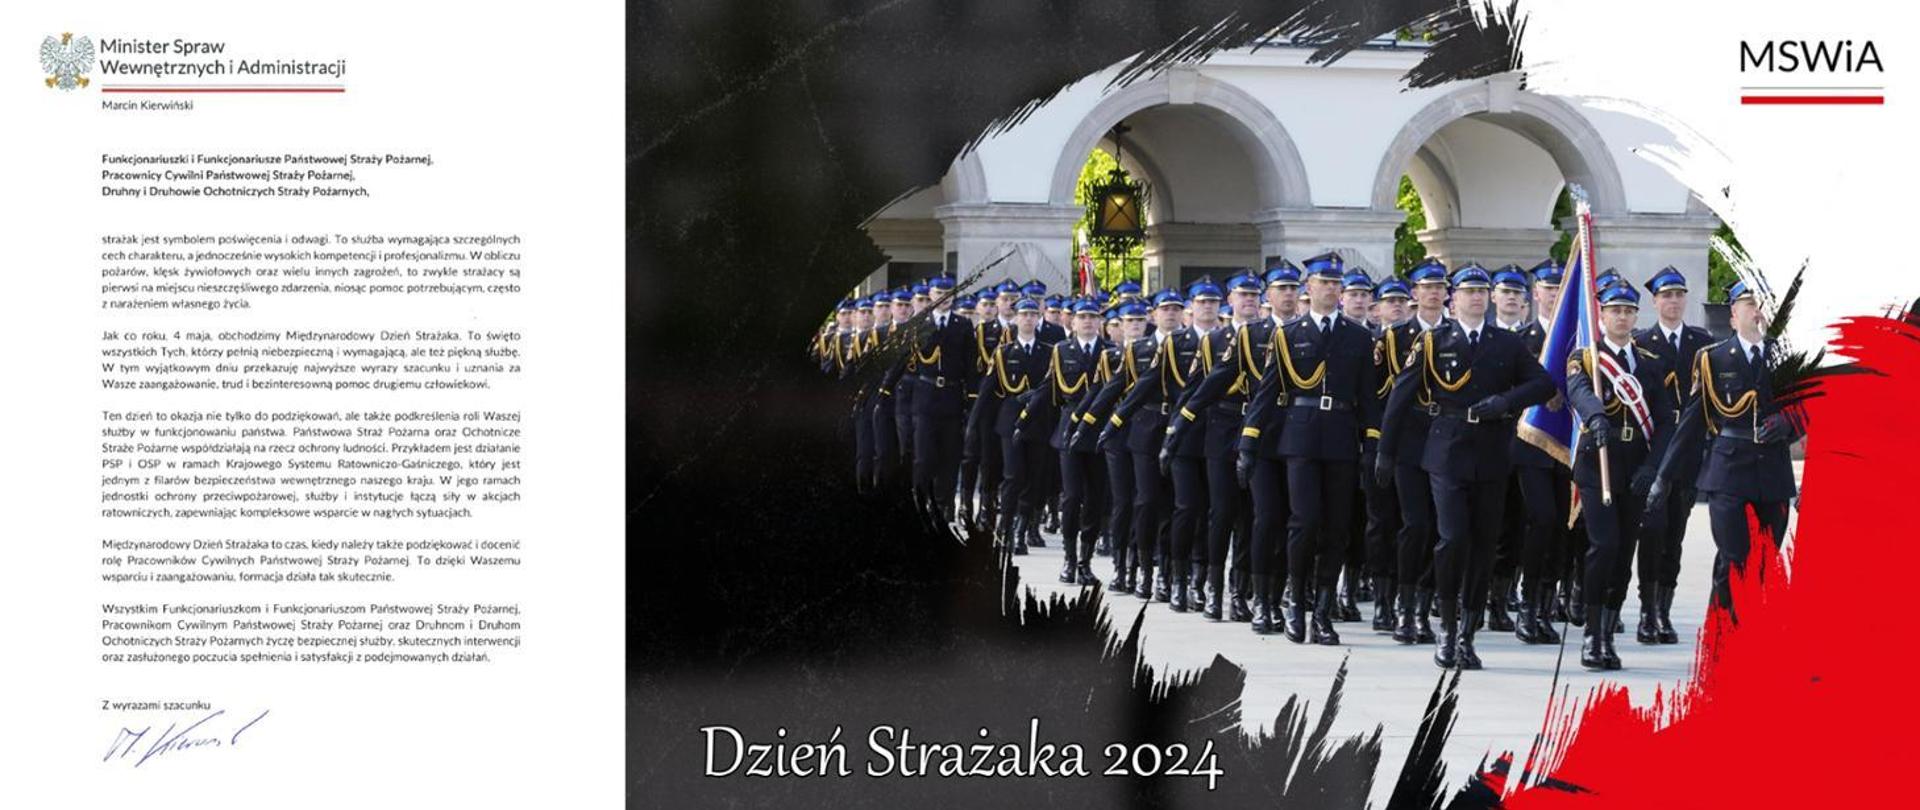 Baner Życzenia Ministra Spraw Wewnętrznych i Administracji z okazji Dnia Strażaka w związku z Dniem Strażaka 2024.